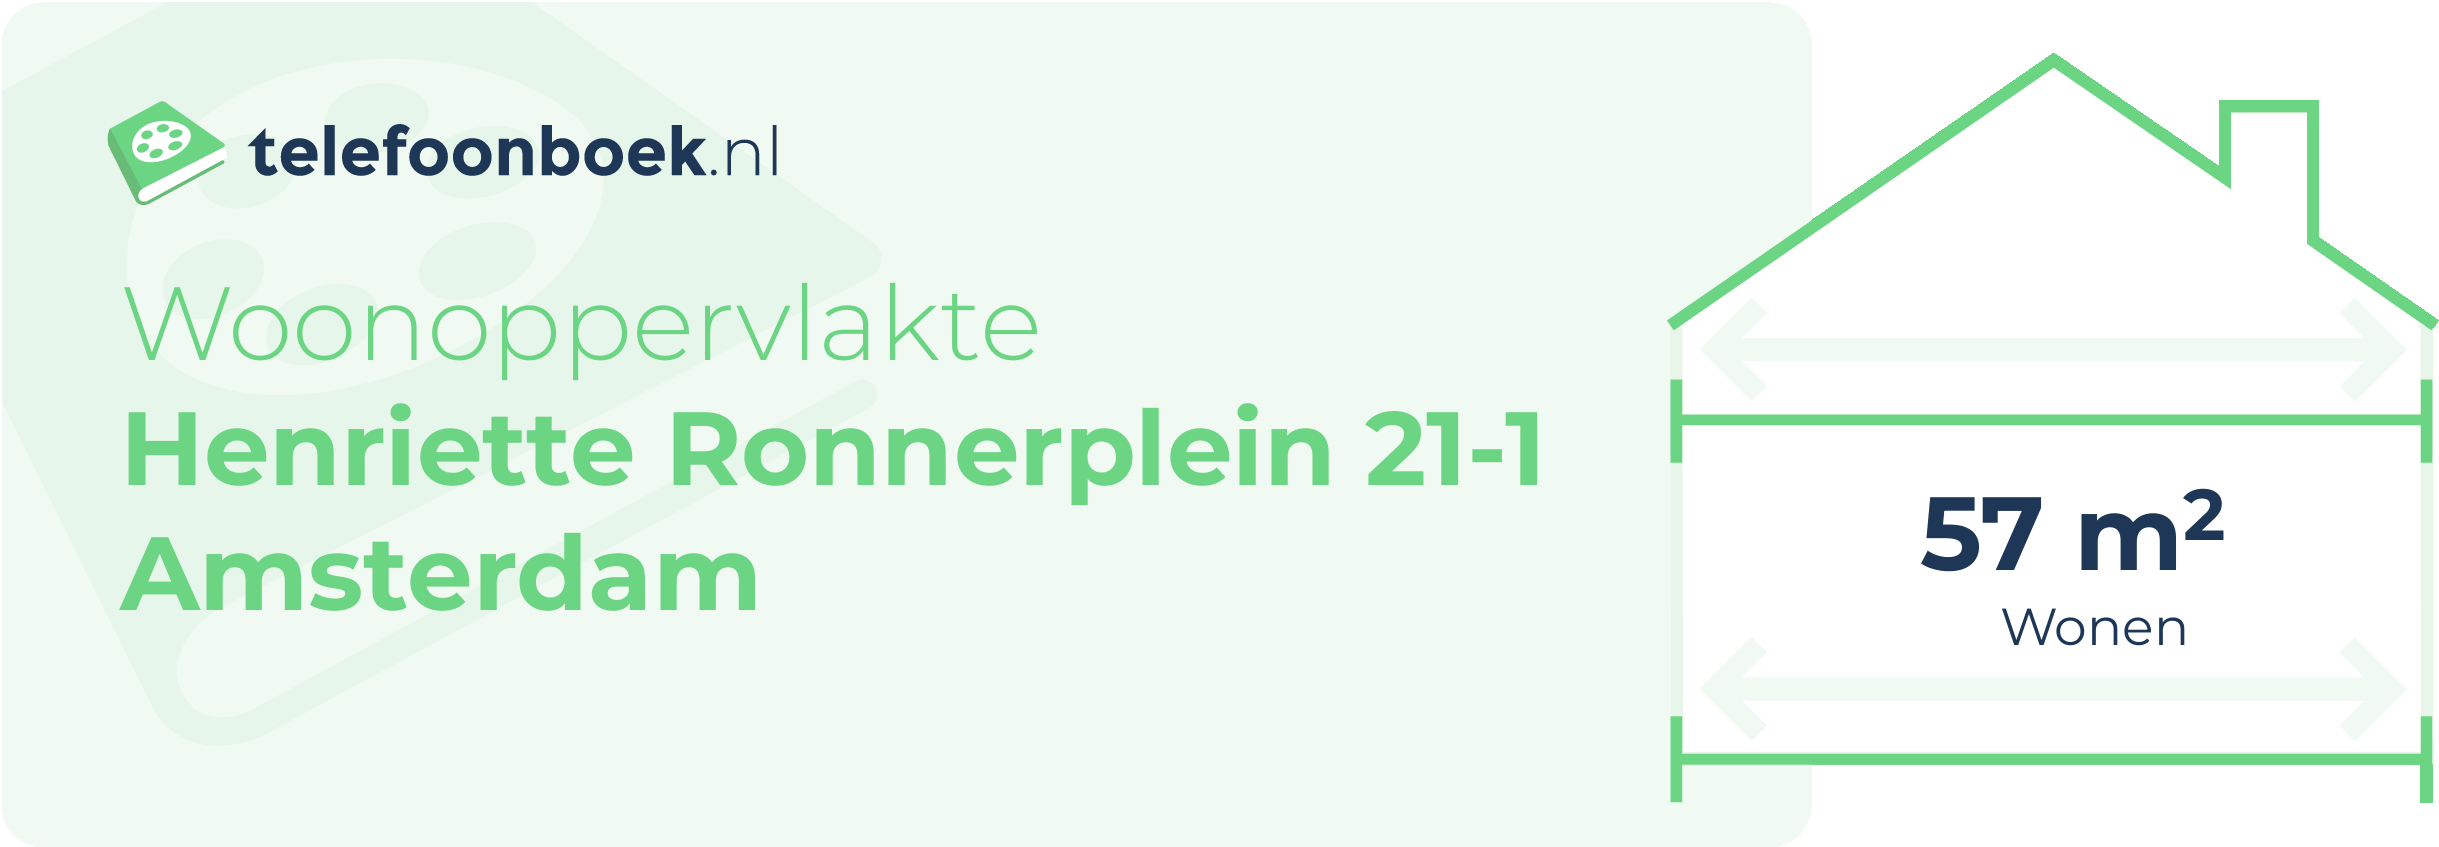 Woonoppervlakte Henriette Ronnerplein 21-1 Amsterdam